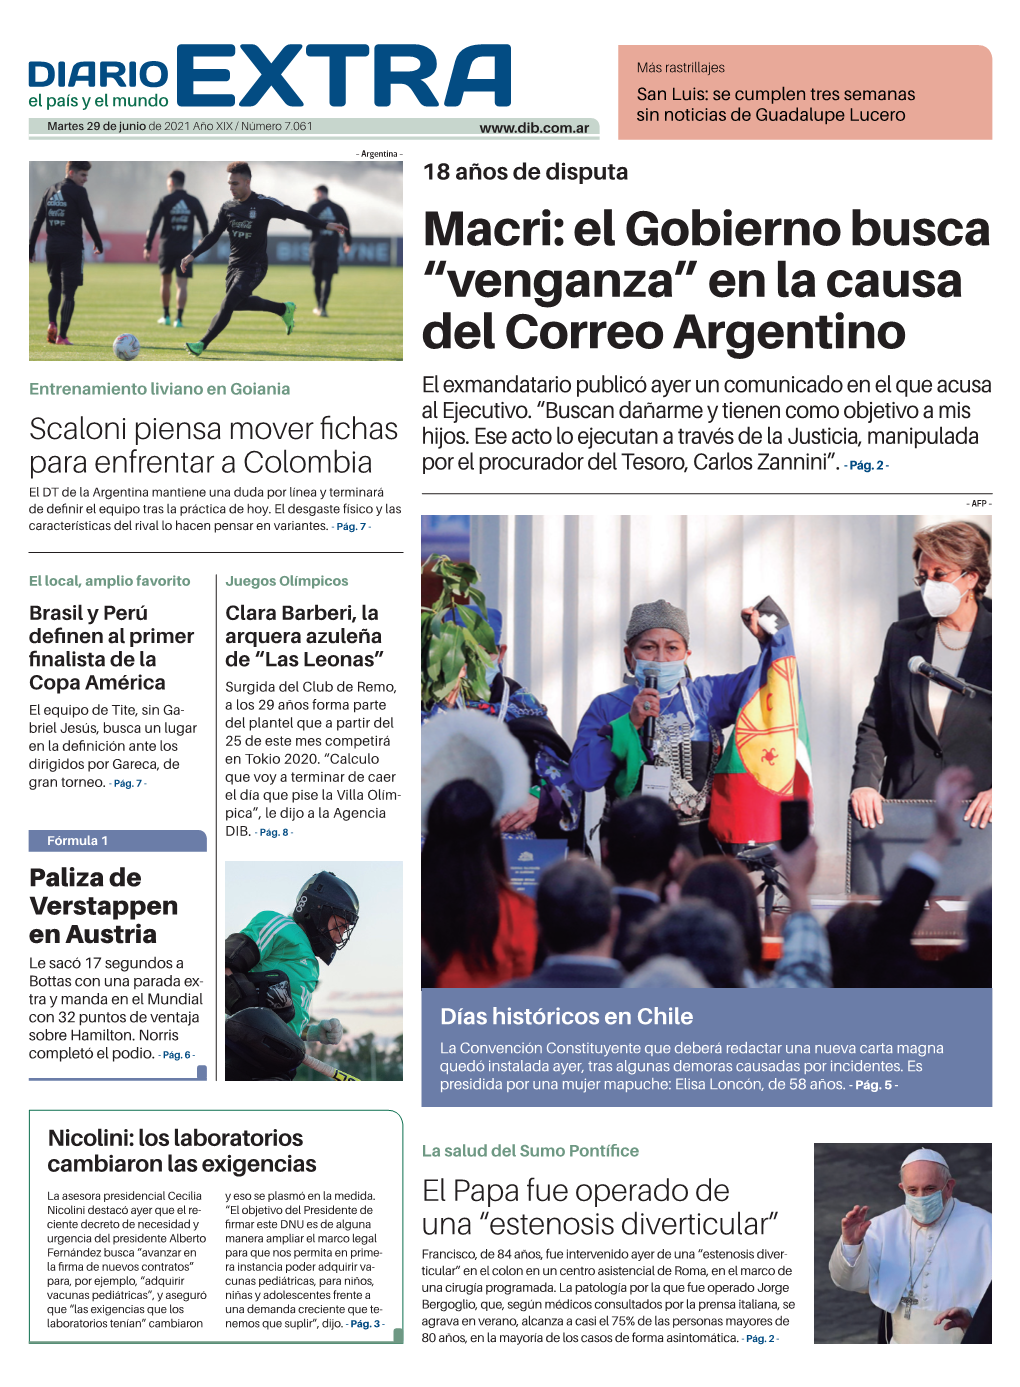 Macri: El Gobierno Busca “Venganza” En La Causa Del Correo Argentino